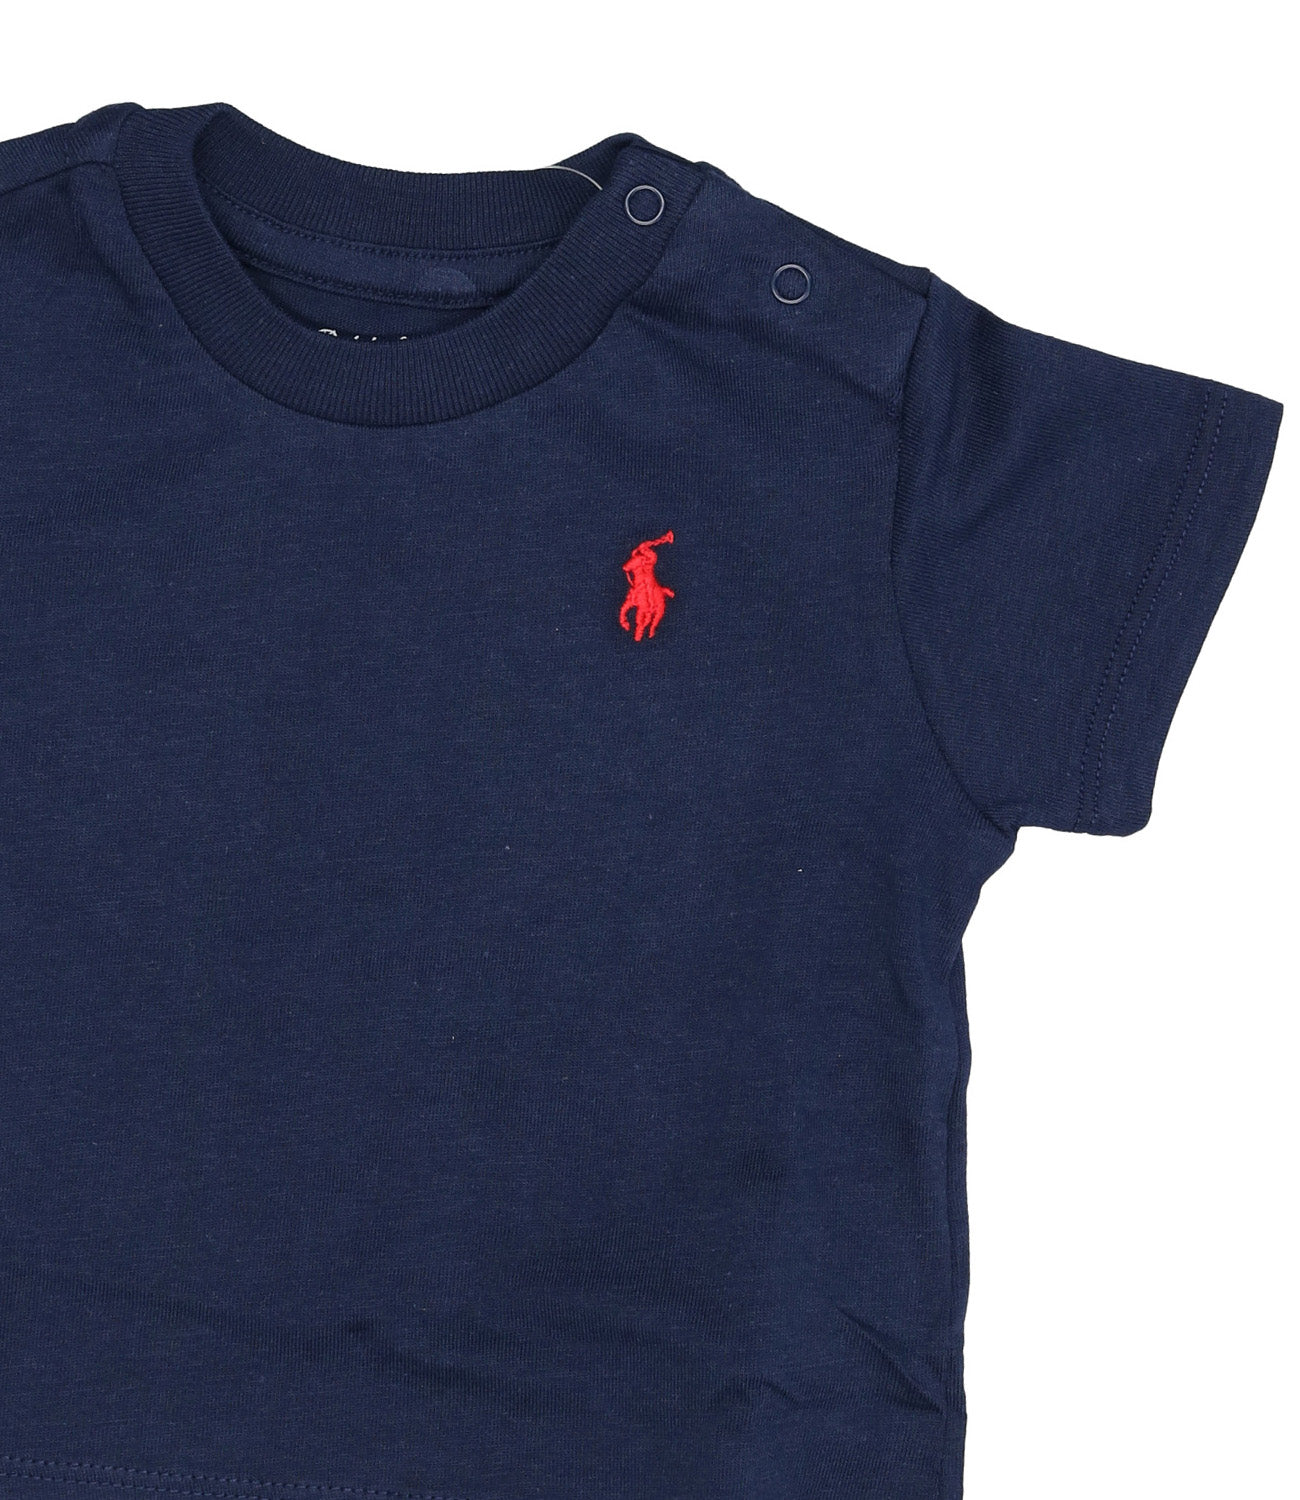 Ralph Lauren Childrenswear | Navy Blue T-Shirt